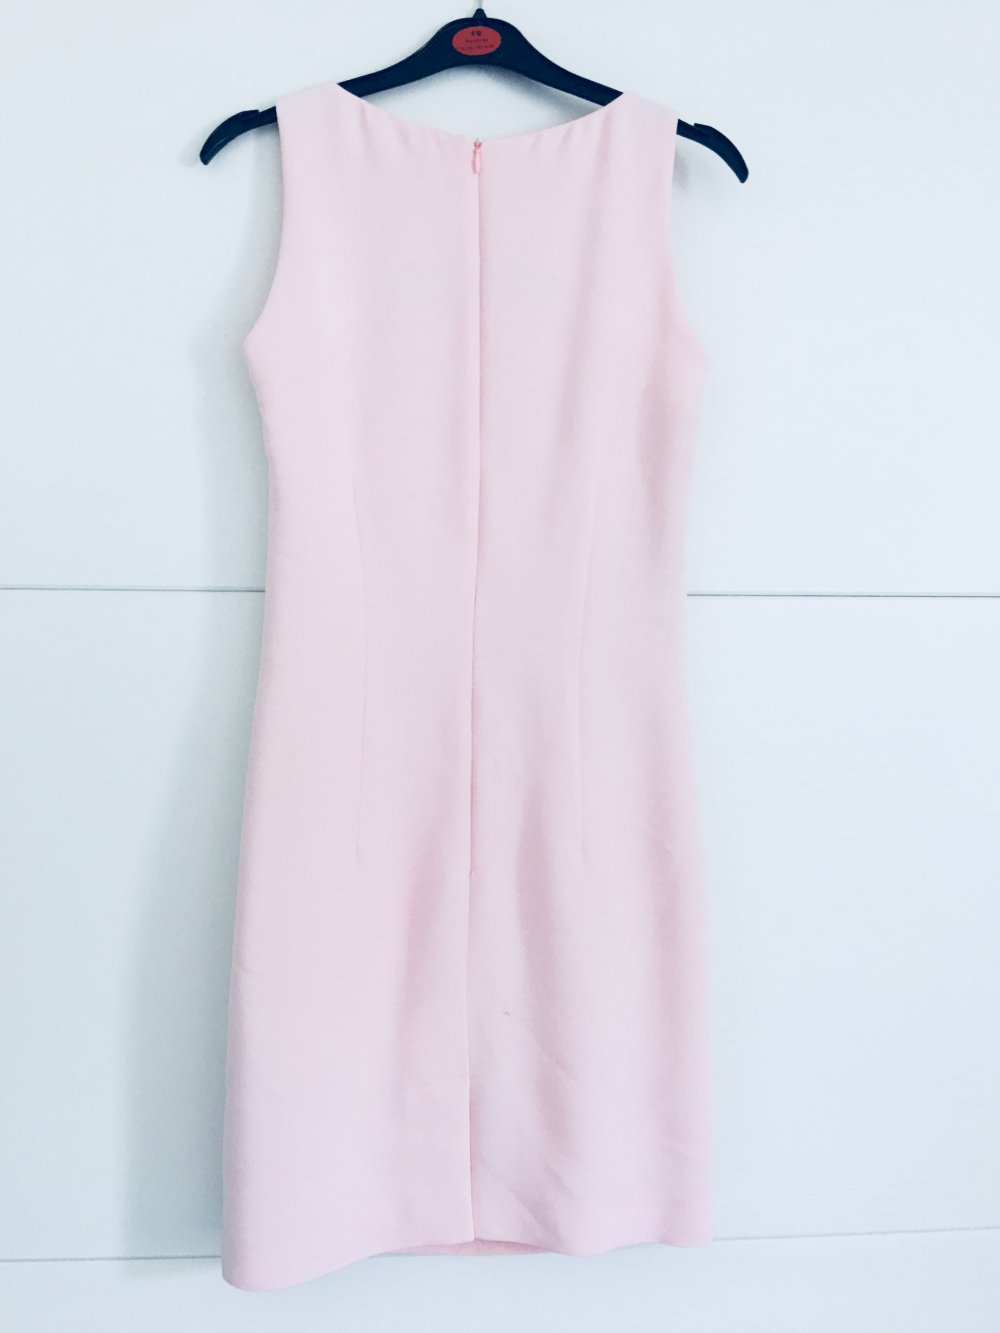 Sommerkleid - neu - rosa 